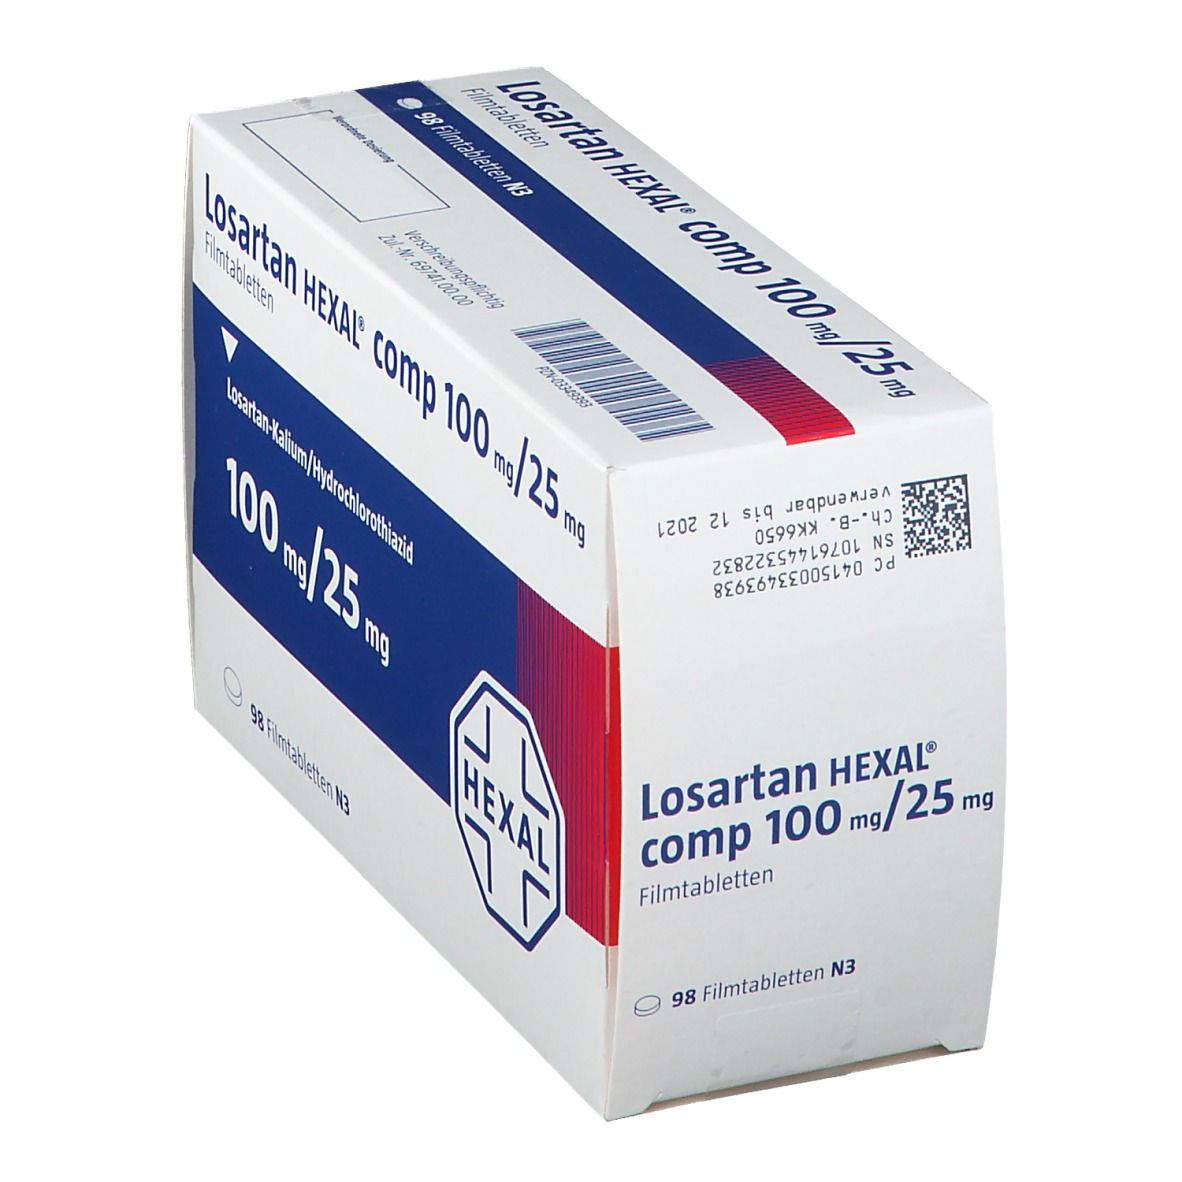 Losartan HEXAL® comp 100 mg/25 mg